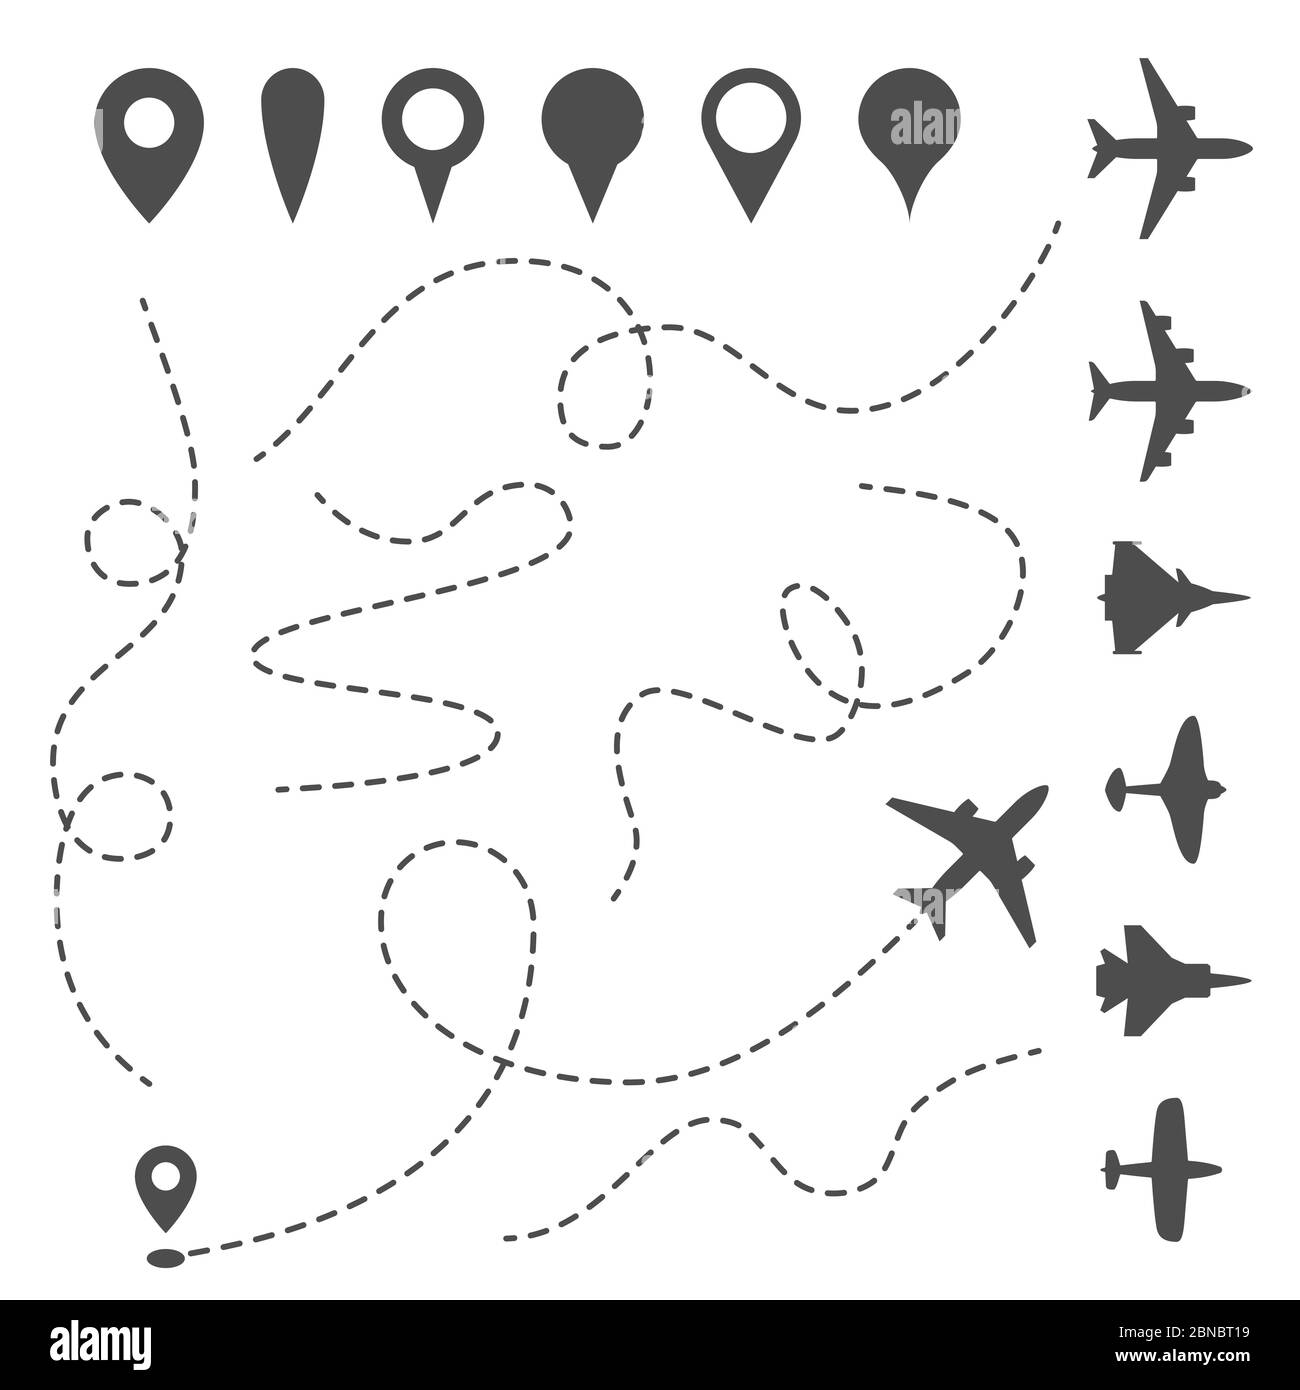 Trayecto de línea de plano. Ruta direccional del avión, ruta punteada del mapa y dirección de la mosca. Aviones y símbolos de vectores de alfileres. Ruta de movimiento de avión, ilustración de ruta de silueta de avión Ilustración del Vector